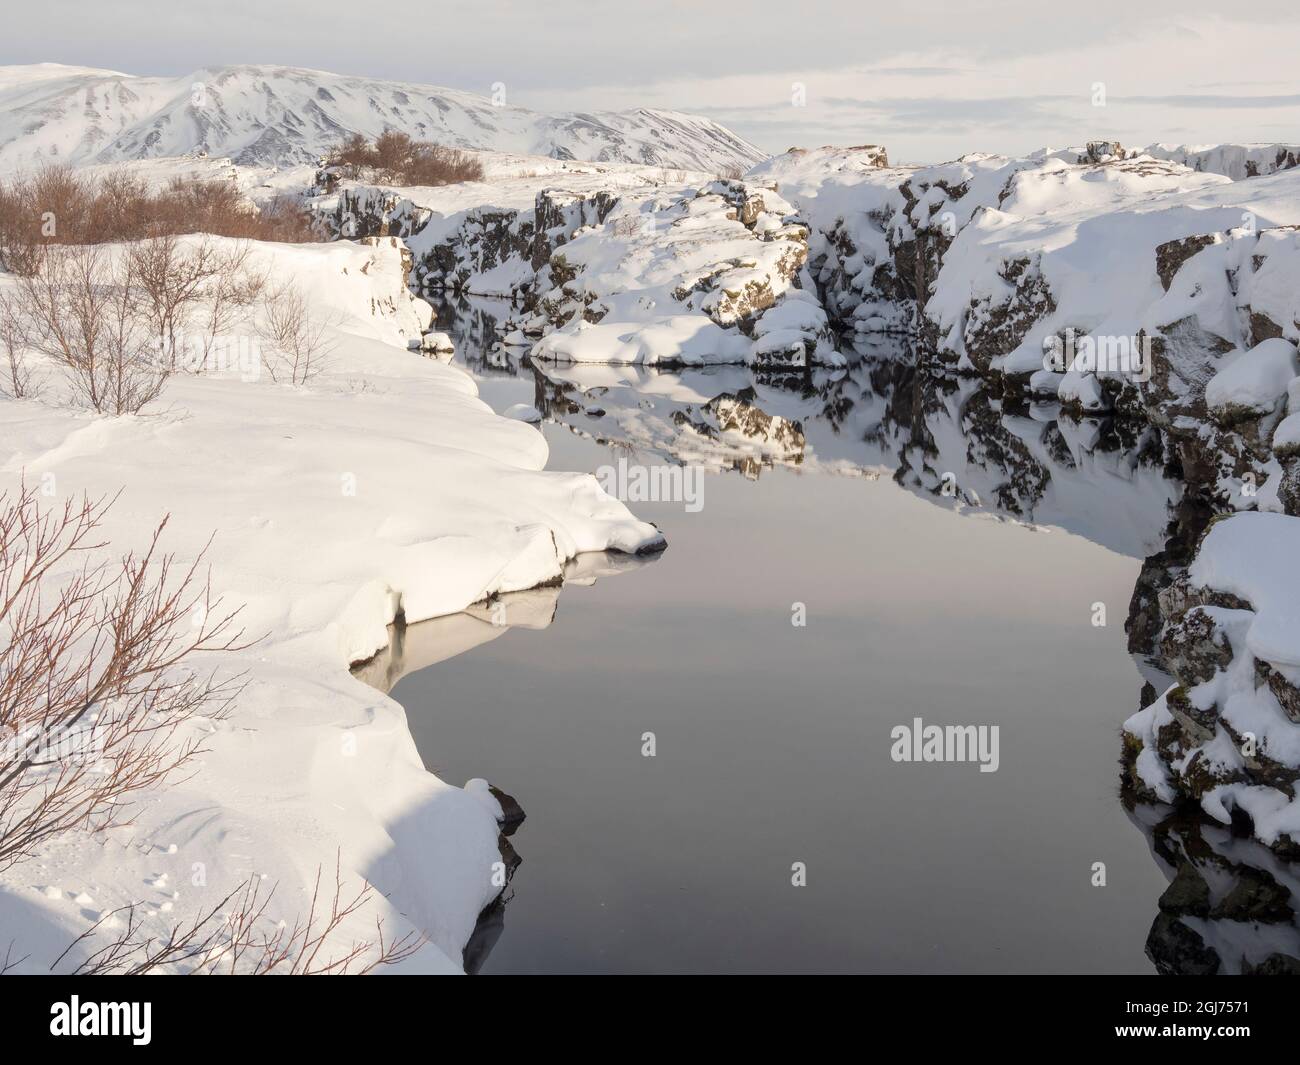 Flosagja Schlucht. Island, Thingvellir National Park, Teil des UNESCO-Weltkulturerbes, im Winter mit frischem Schnee bedeckt. Stockfoto